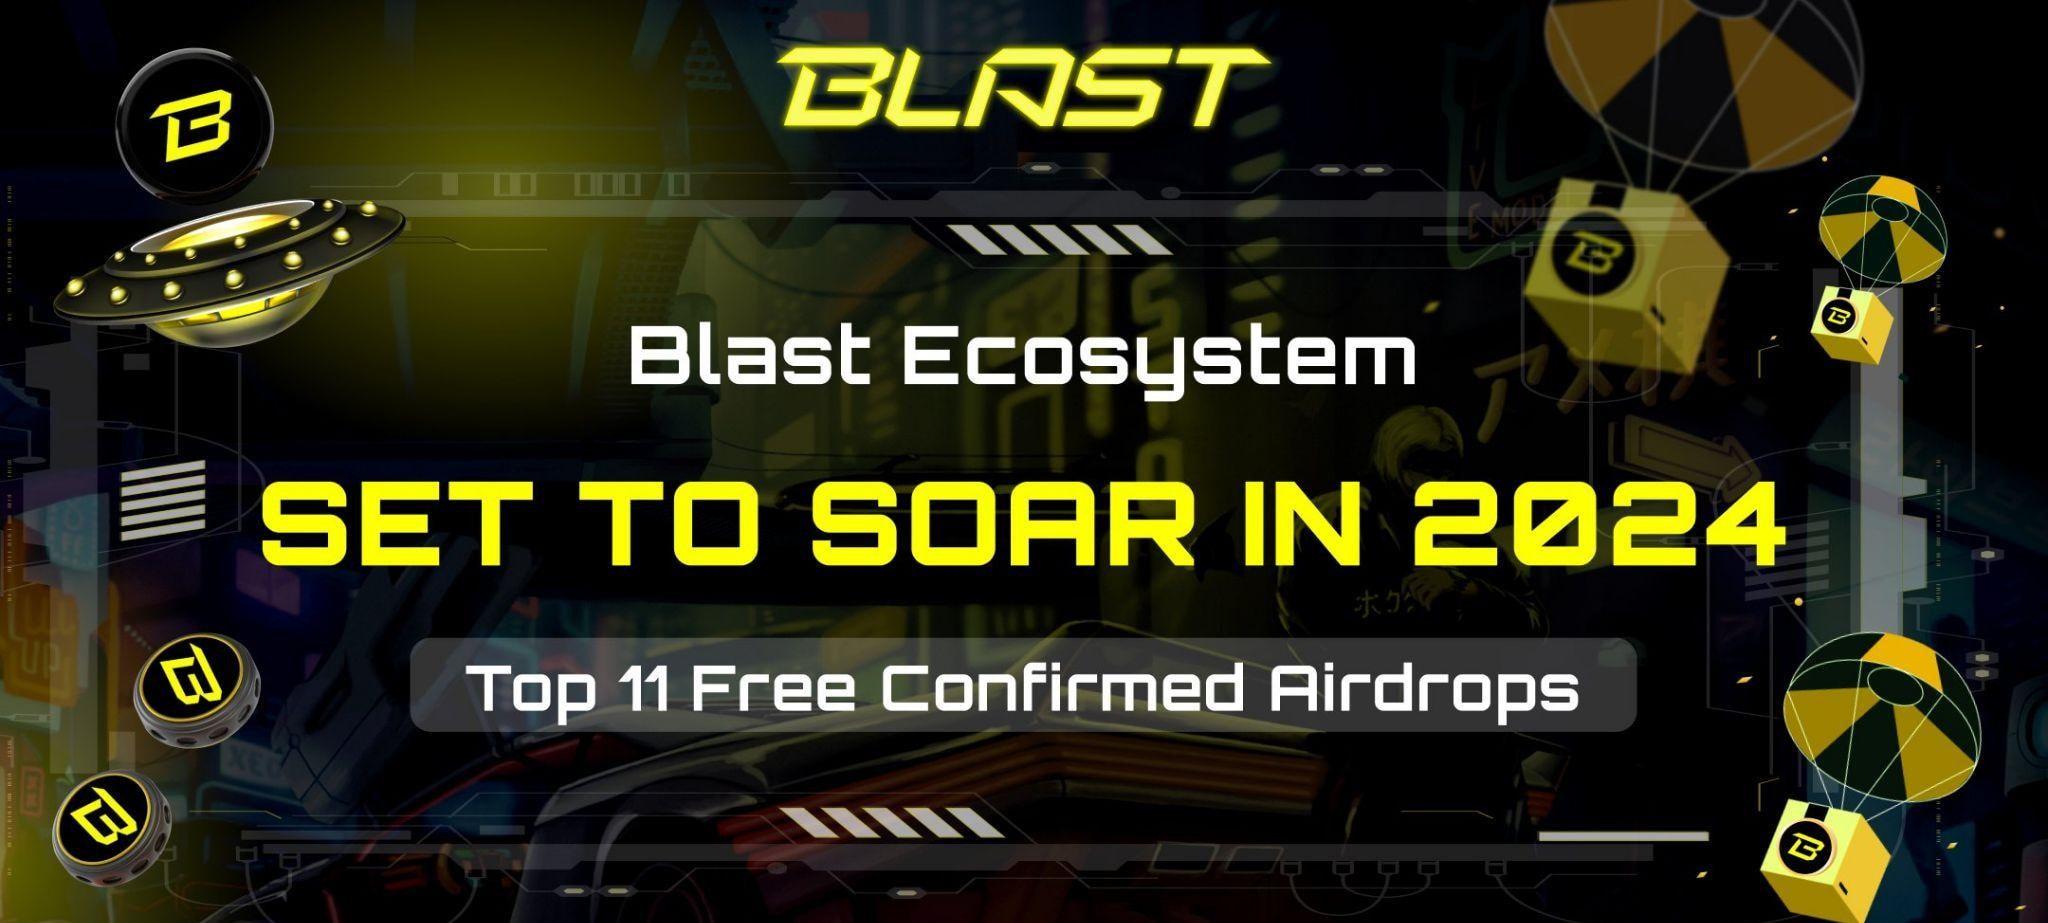 blast đã xác nhận sẽ airdrop cho người dùng